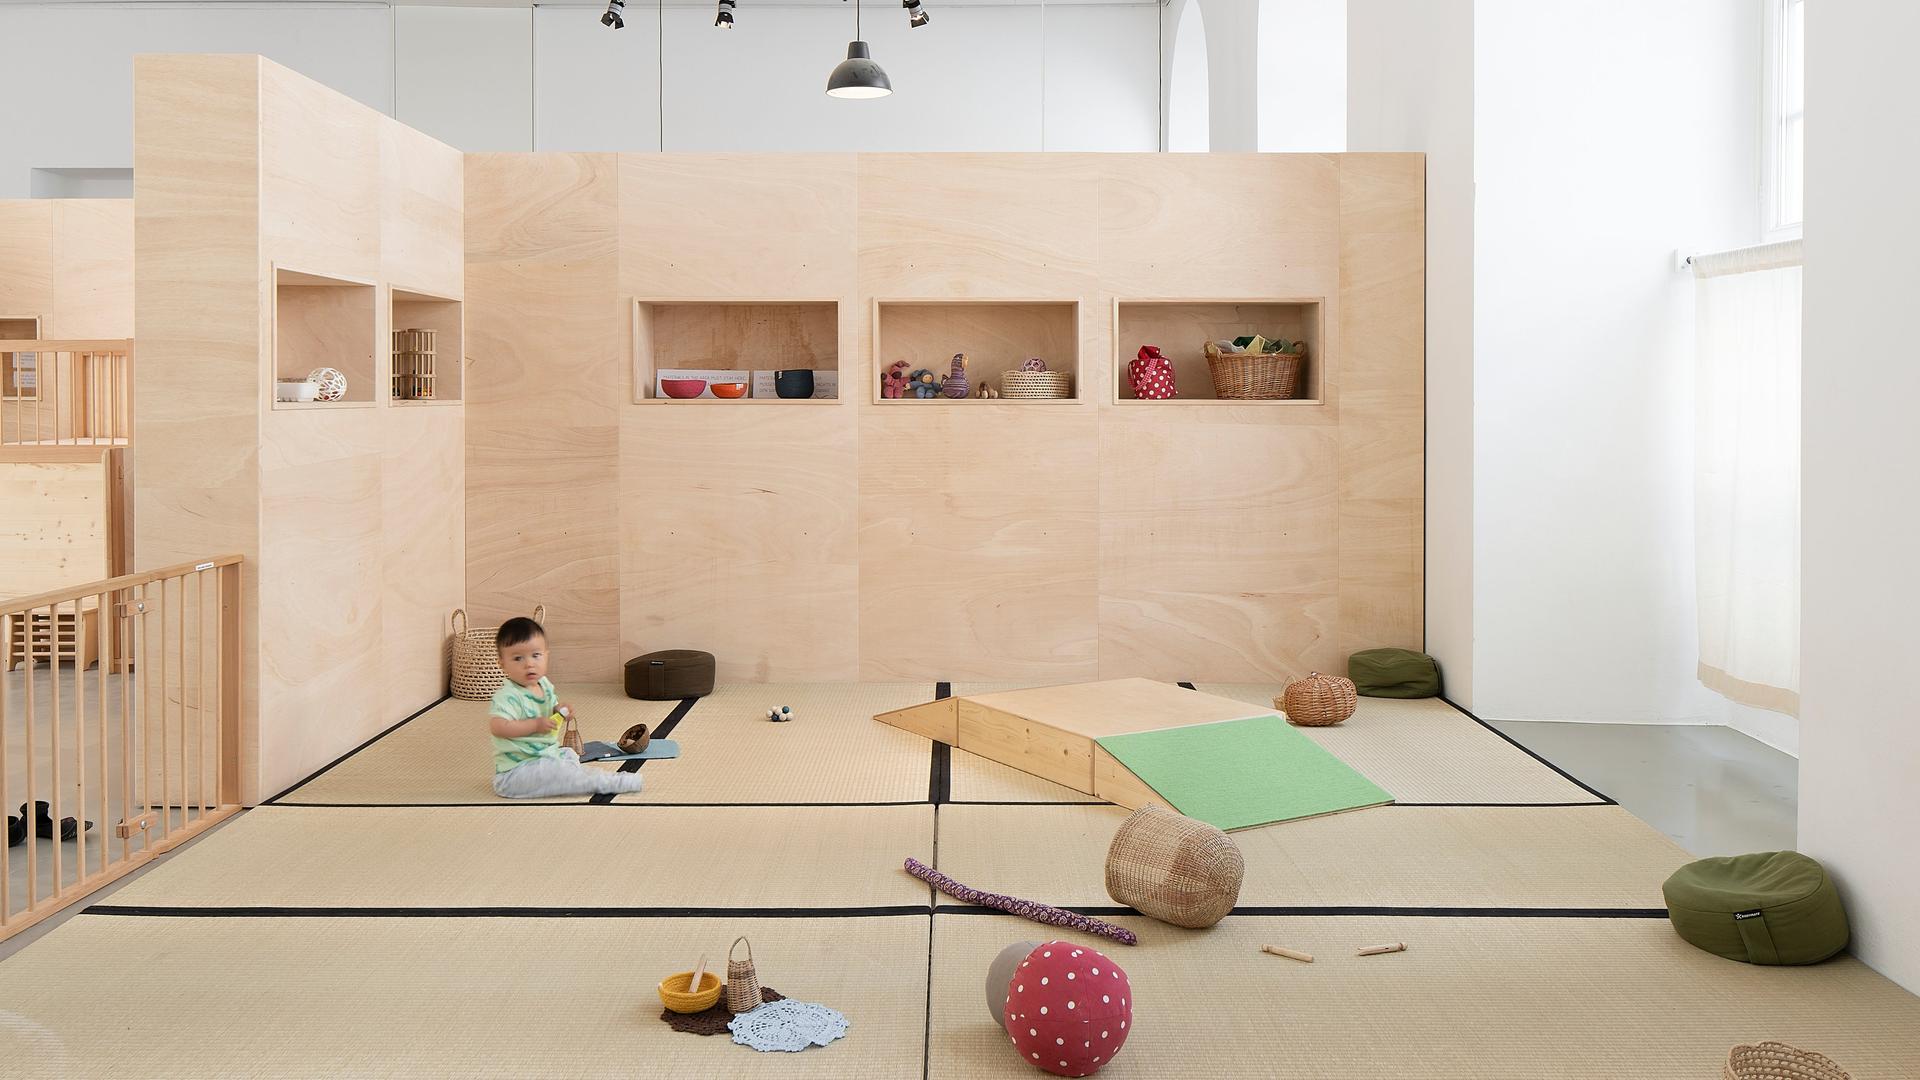 Ein Kleinkind sitzt in der Installation "Eltern und Kleinkinder Krippe" umgeben von Spielzeug.